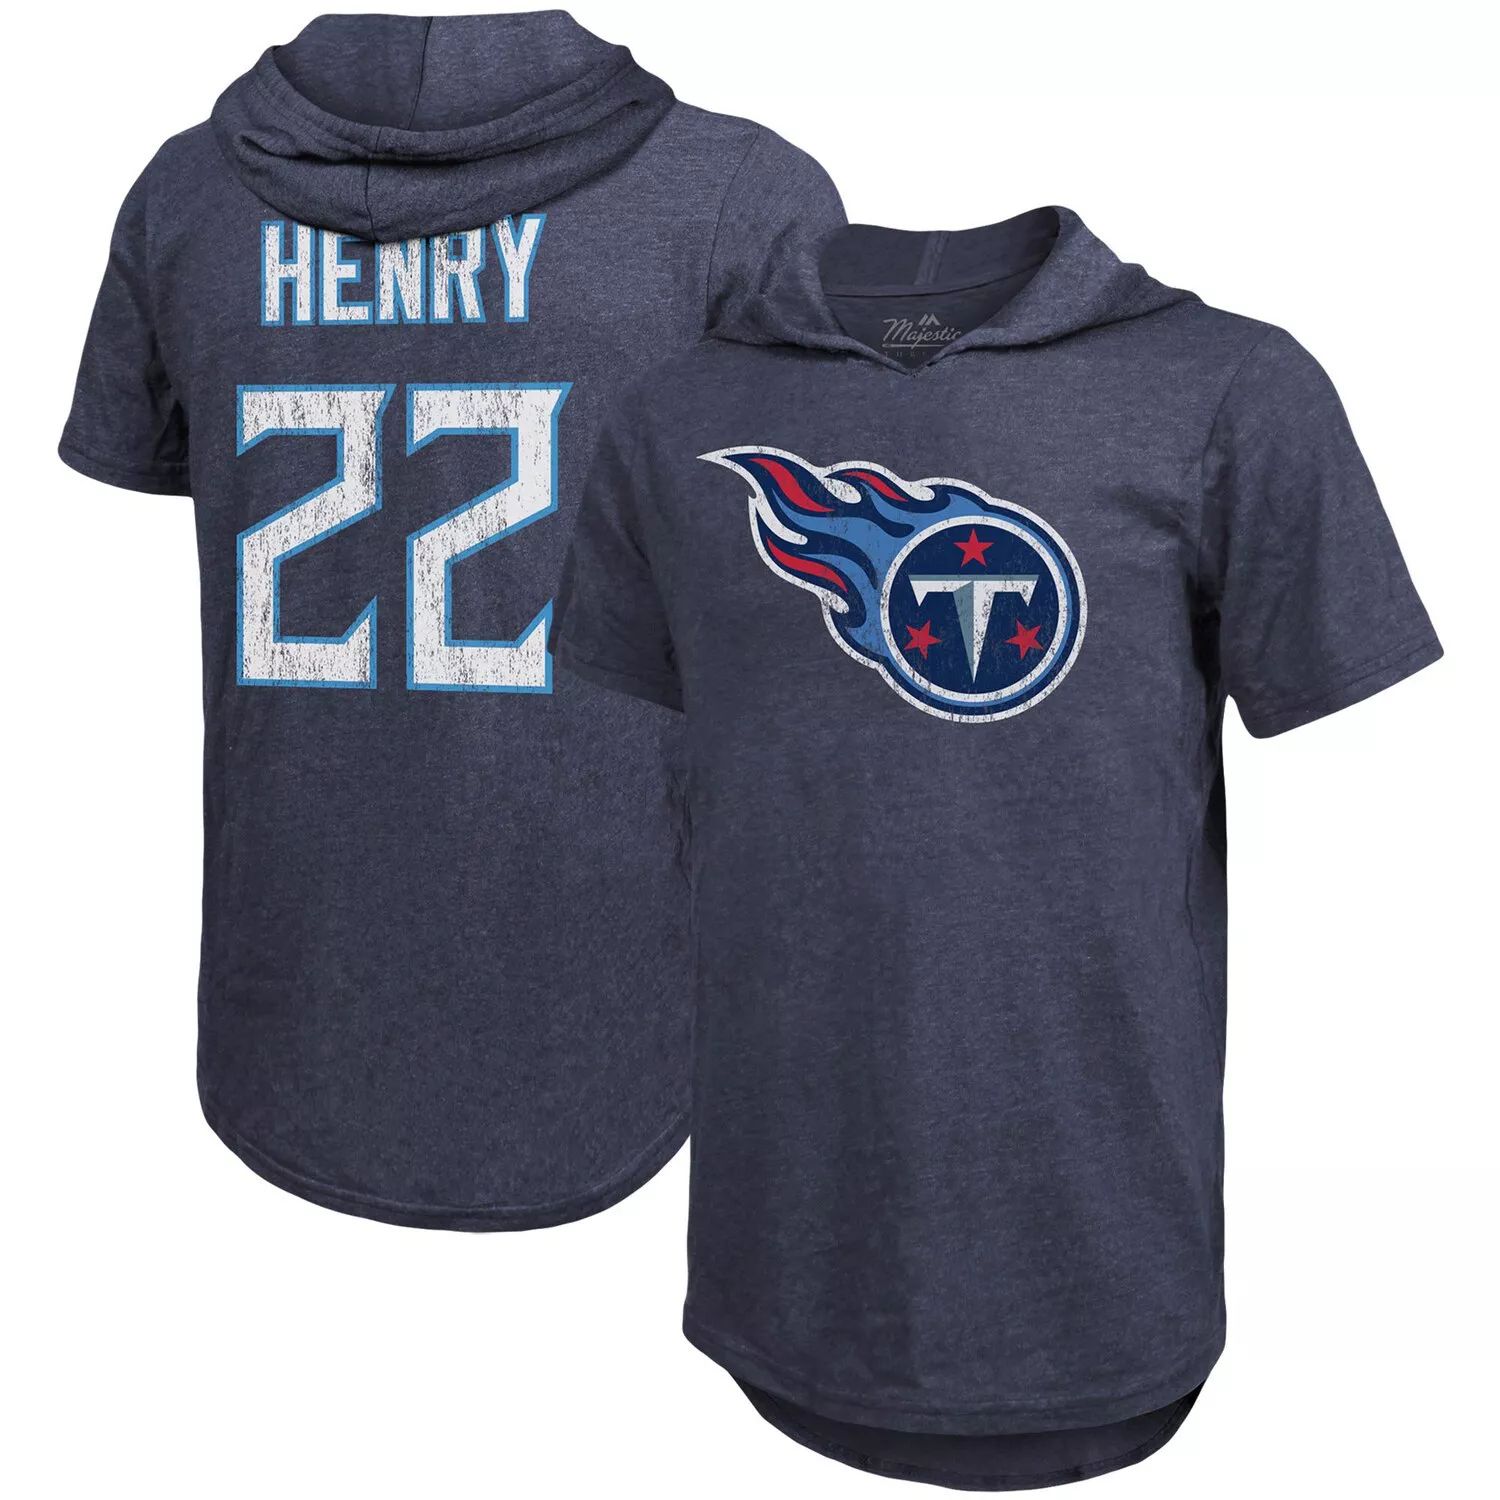 Мужская футболка Fanatics с логотипом Derrick Генри Navy Tennessee Titans, имя и номер игрока, футболка с капюшоном из трех смесей Majestic